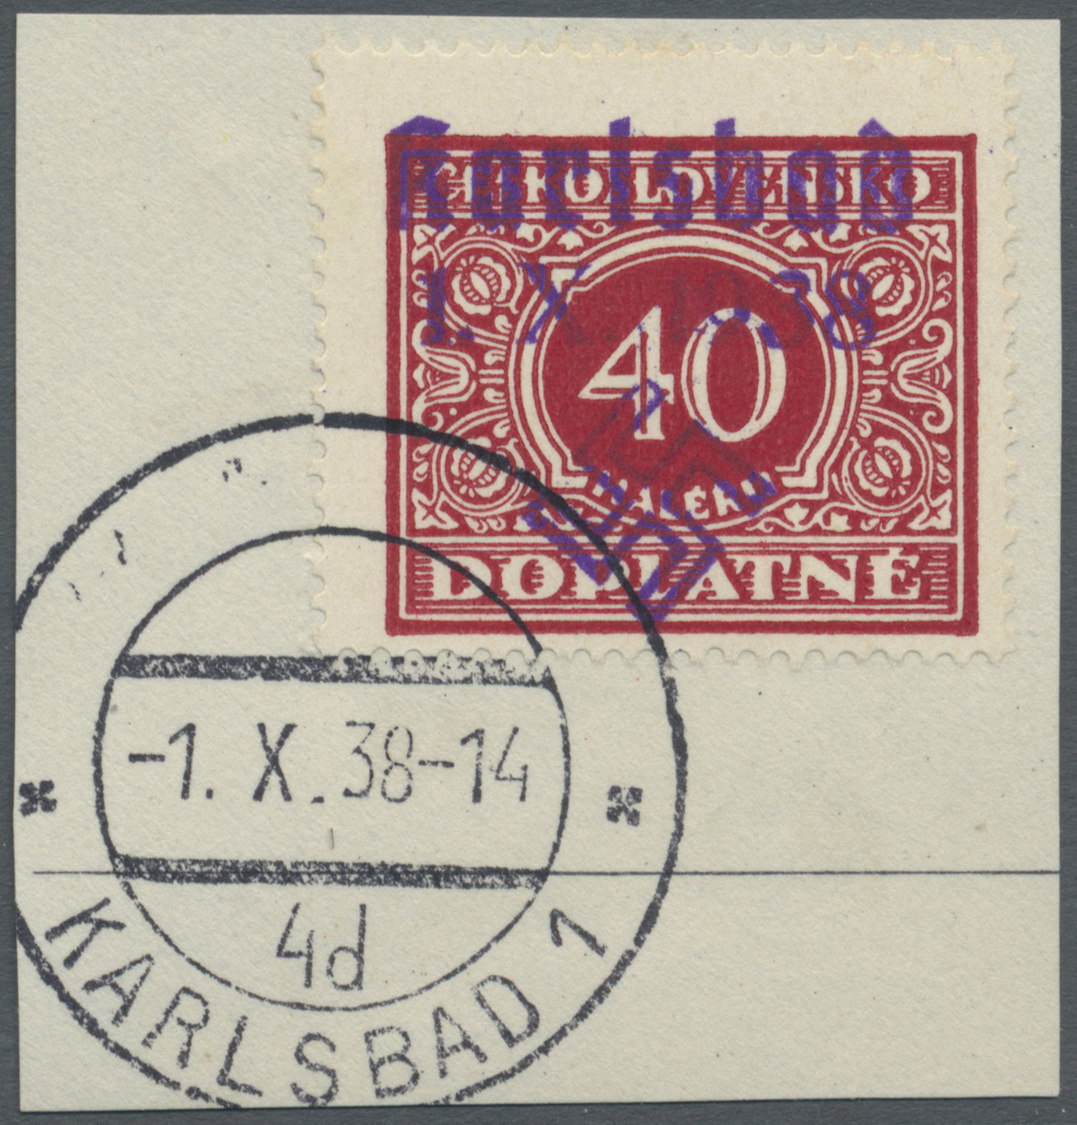 Brfst Sudetenland - Karlsbad: 1938, 40 H. Portomarke Mit Ersttagsstempel "KARLSBAD 4d 1.X.38" Auf Briefstü - Région Des Sudètes